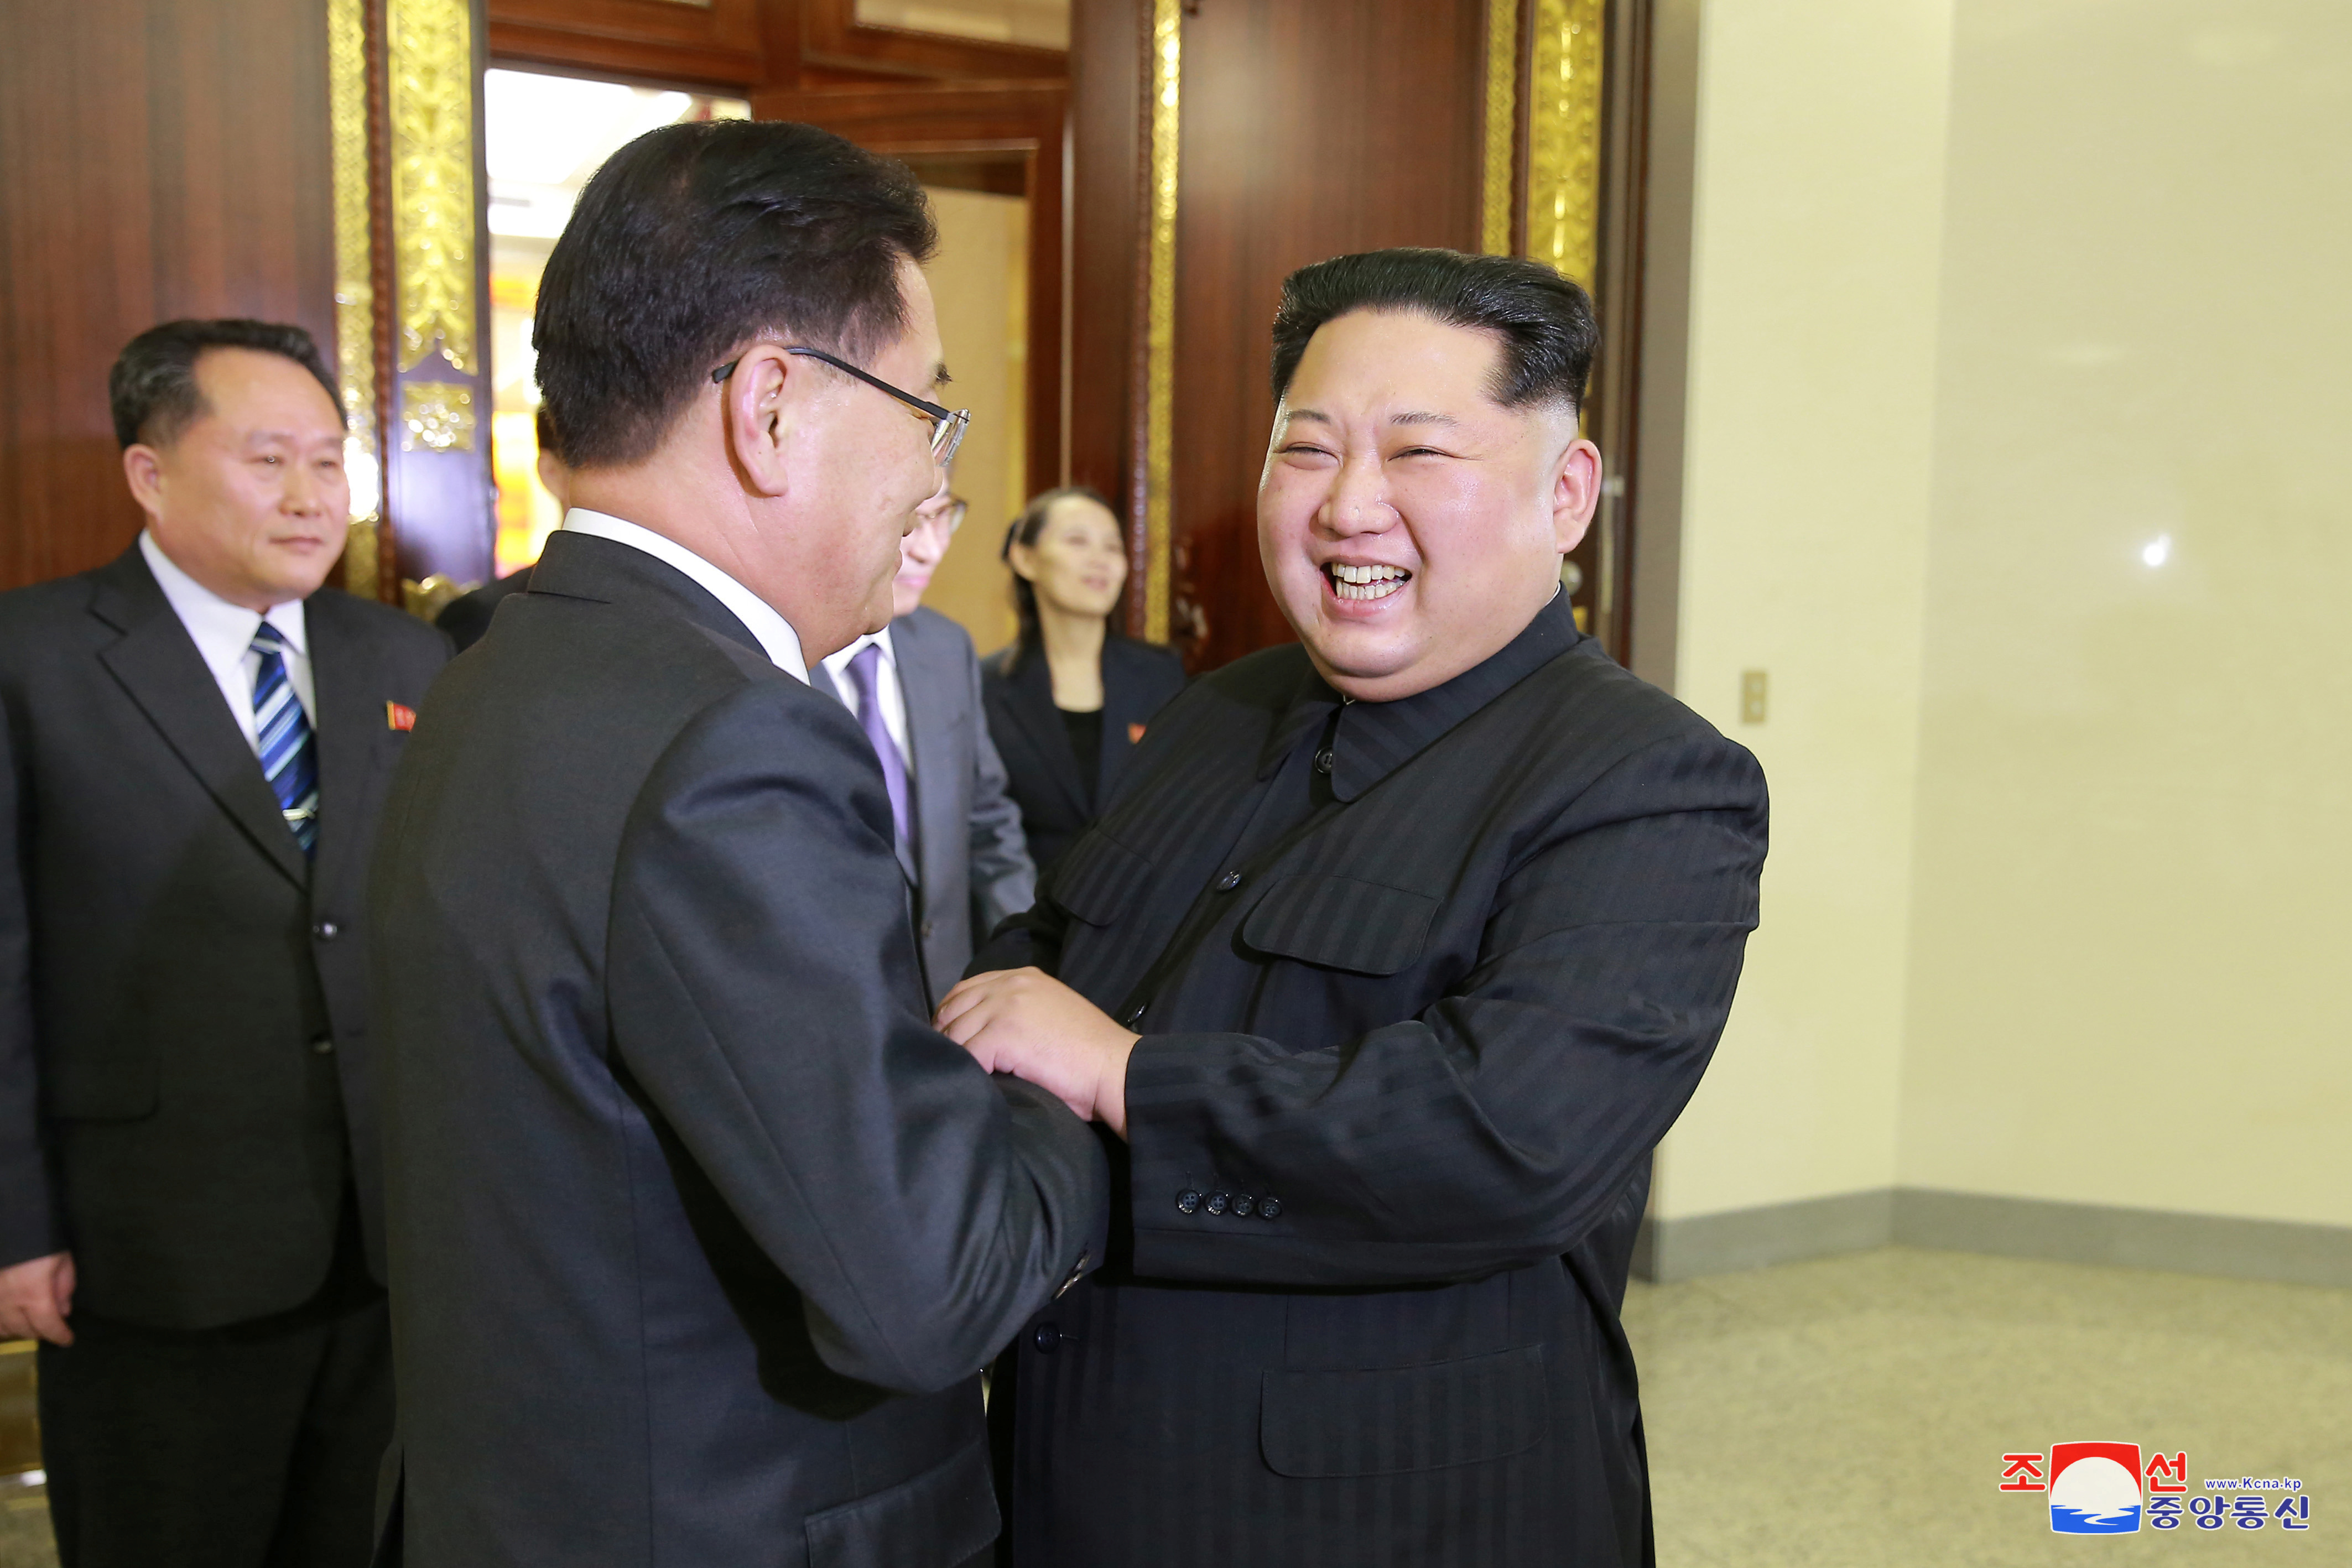 زعيم كوريا الشمالية يبتسم أثناء لقاؤه بأحد أعضاء وفد كوريا الجنوبية